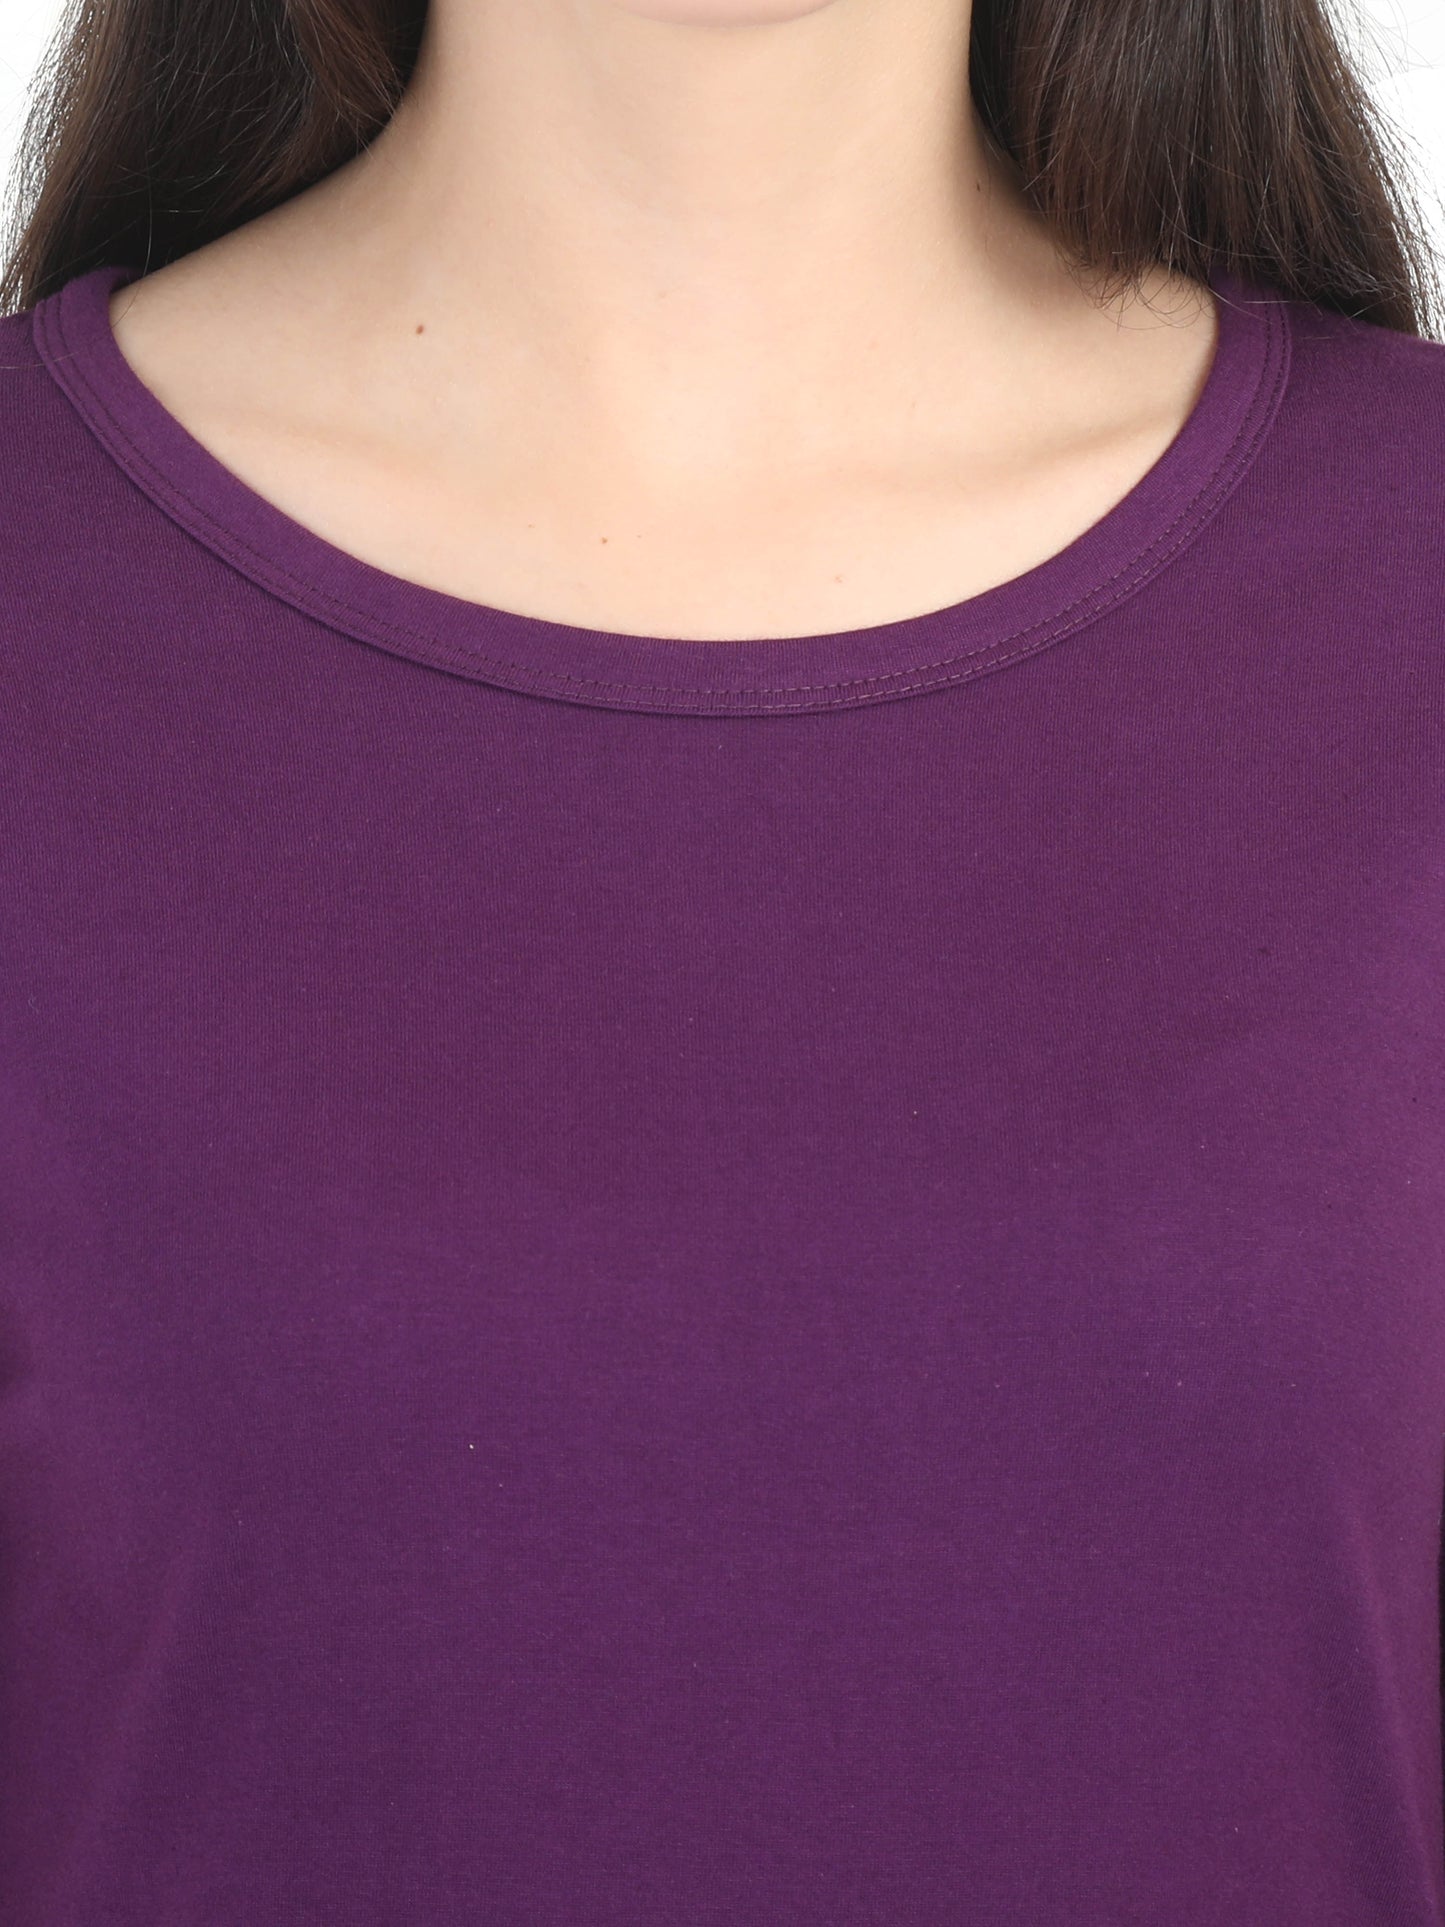 Women's Cotton Plain Round Neck Full Sleeve Purple Color T-Shirt